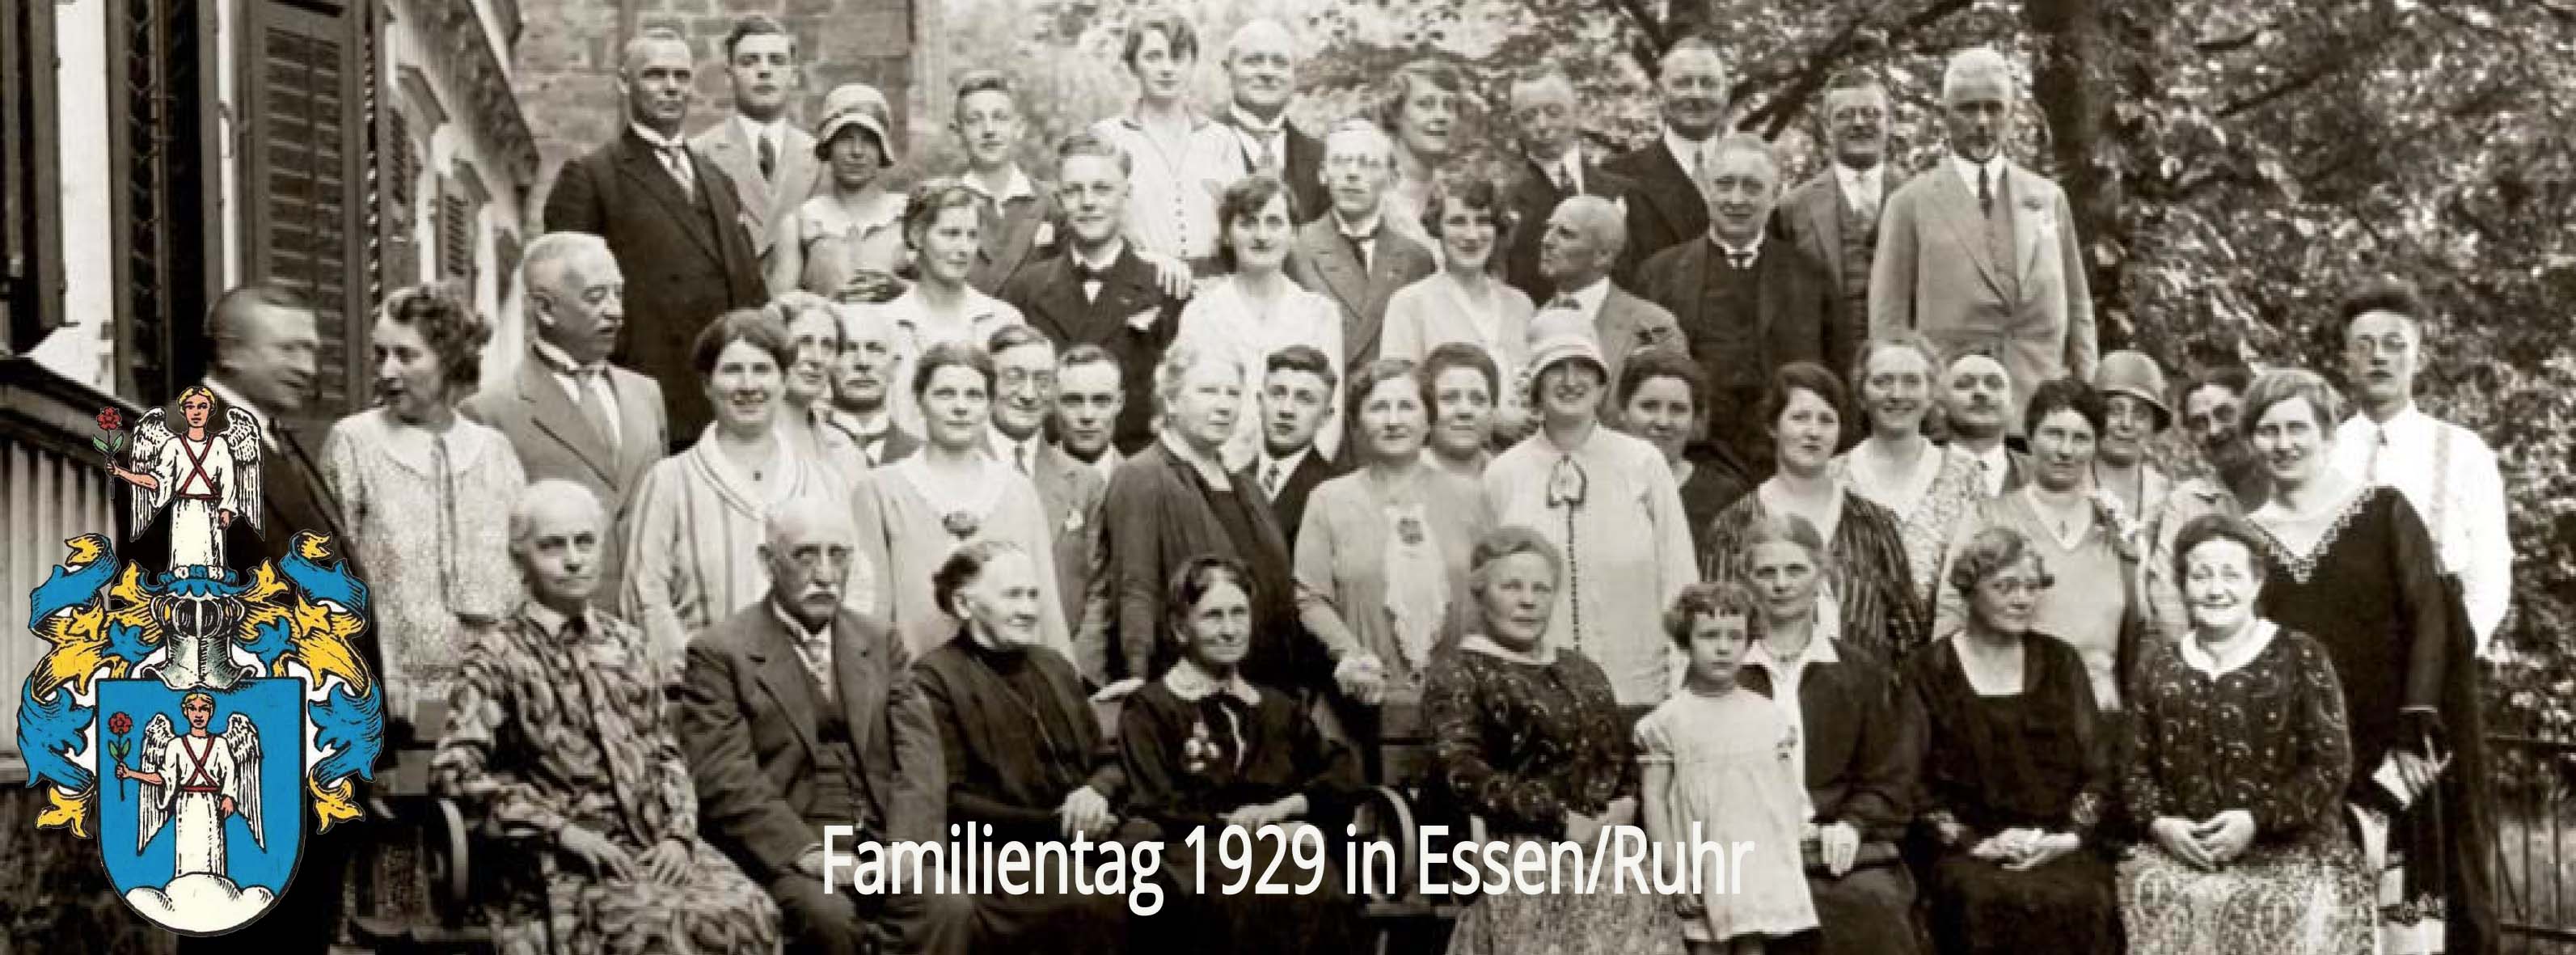 Familienverband Wesener e.V.